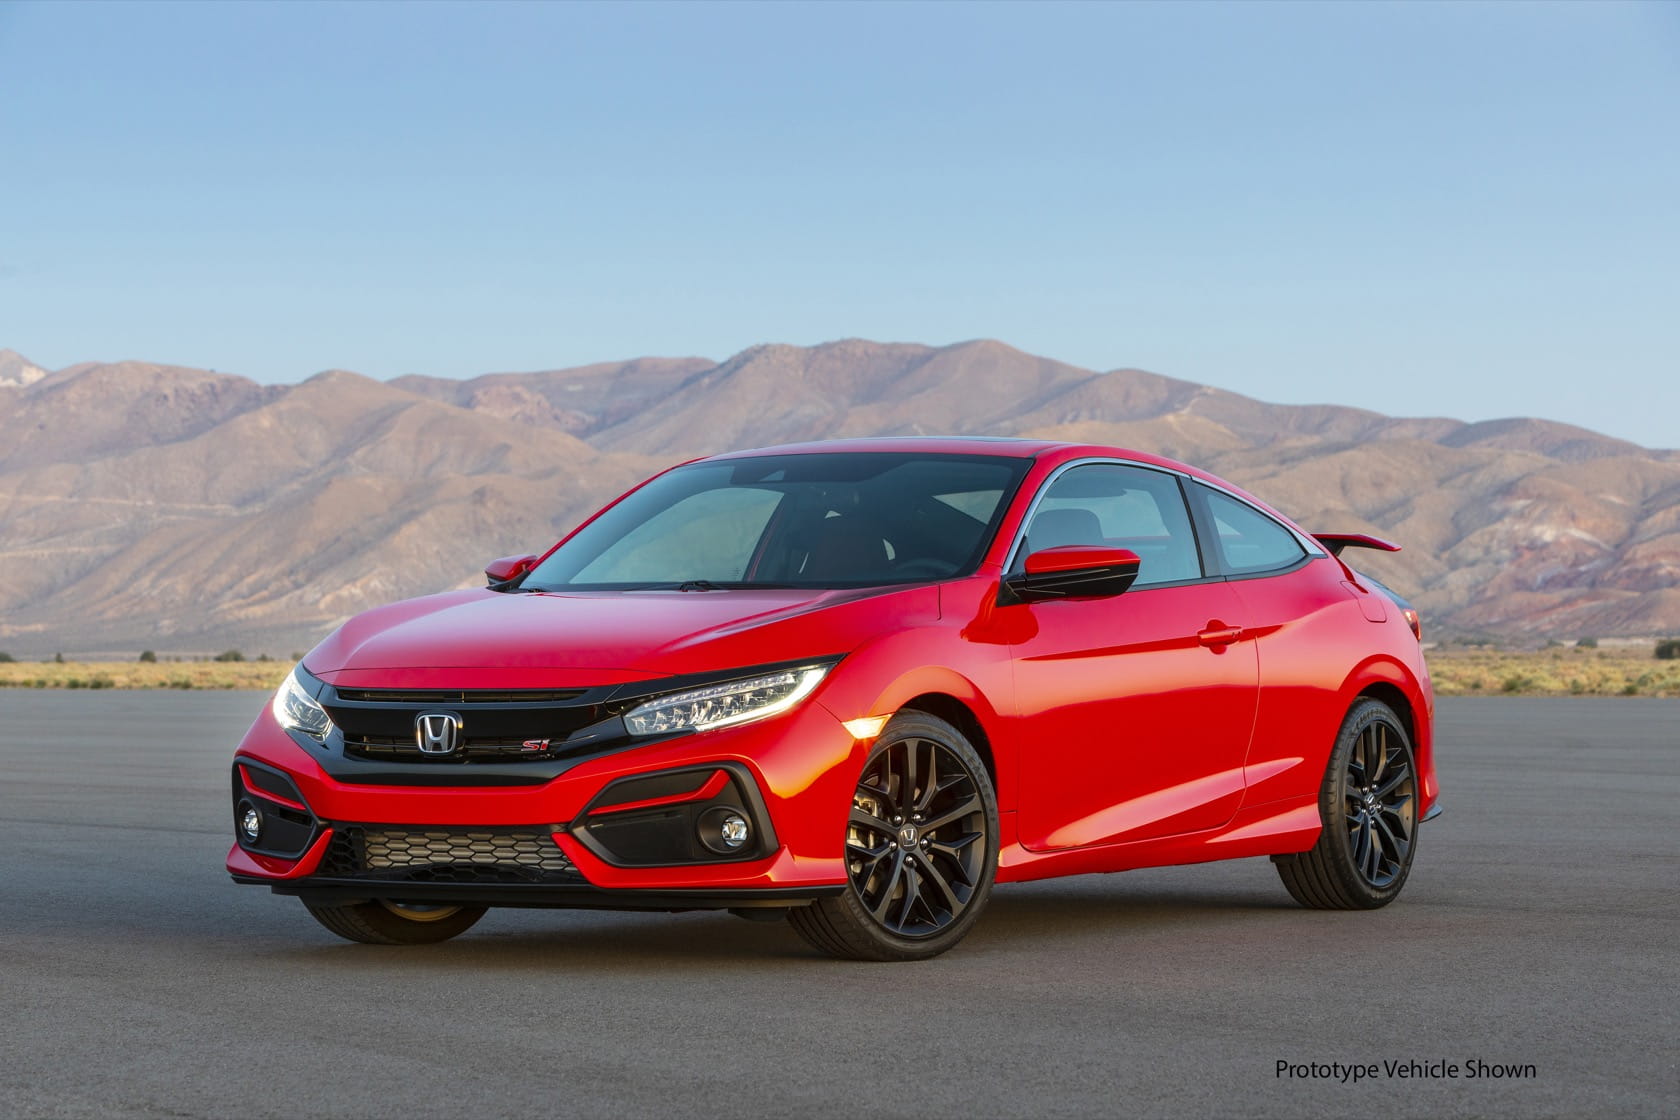 Compare 2020 Honda Civic Models | Honda Review Specs